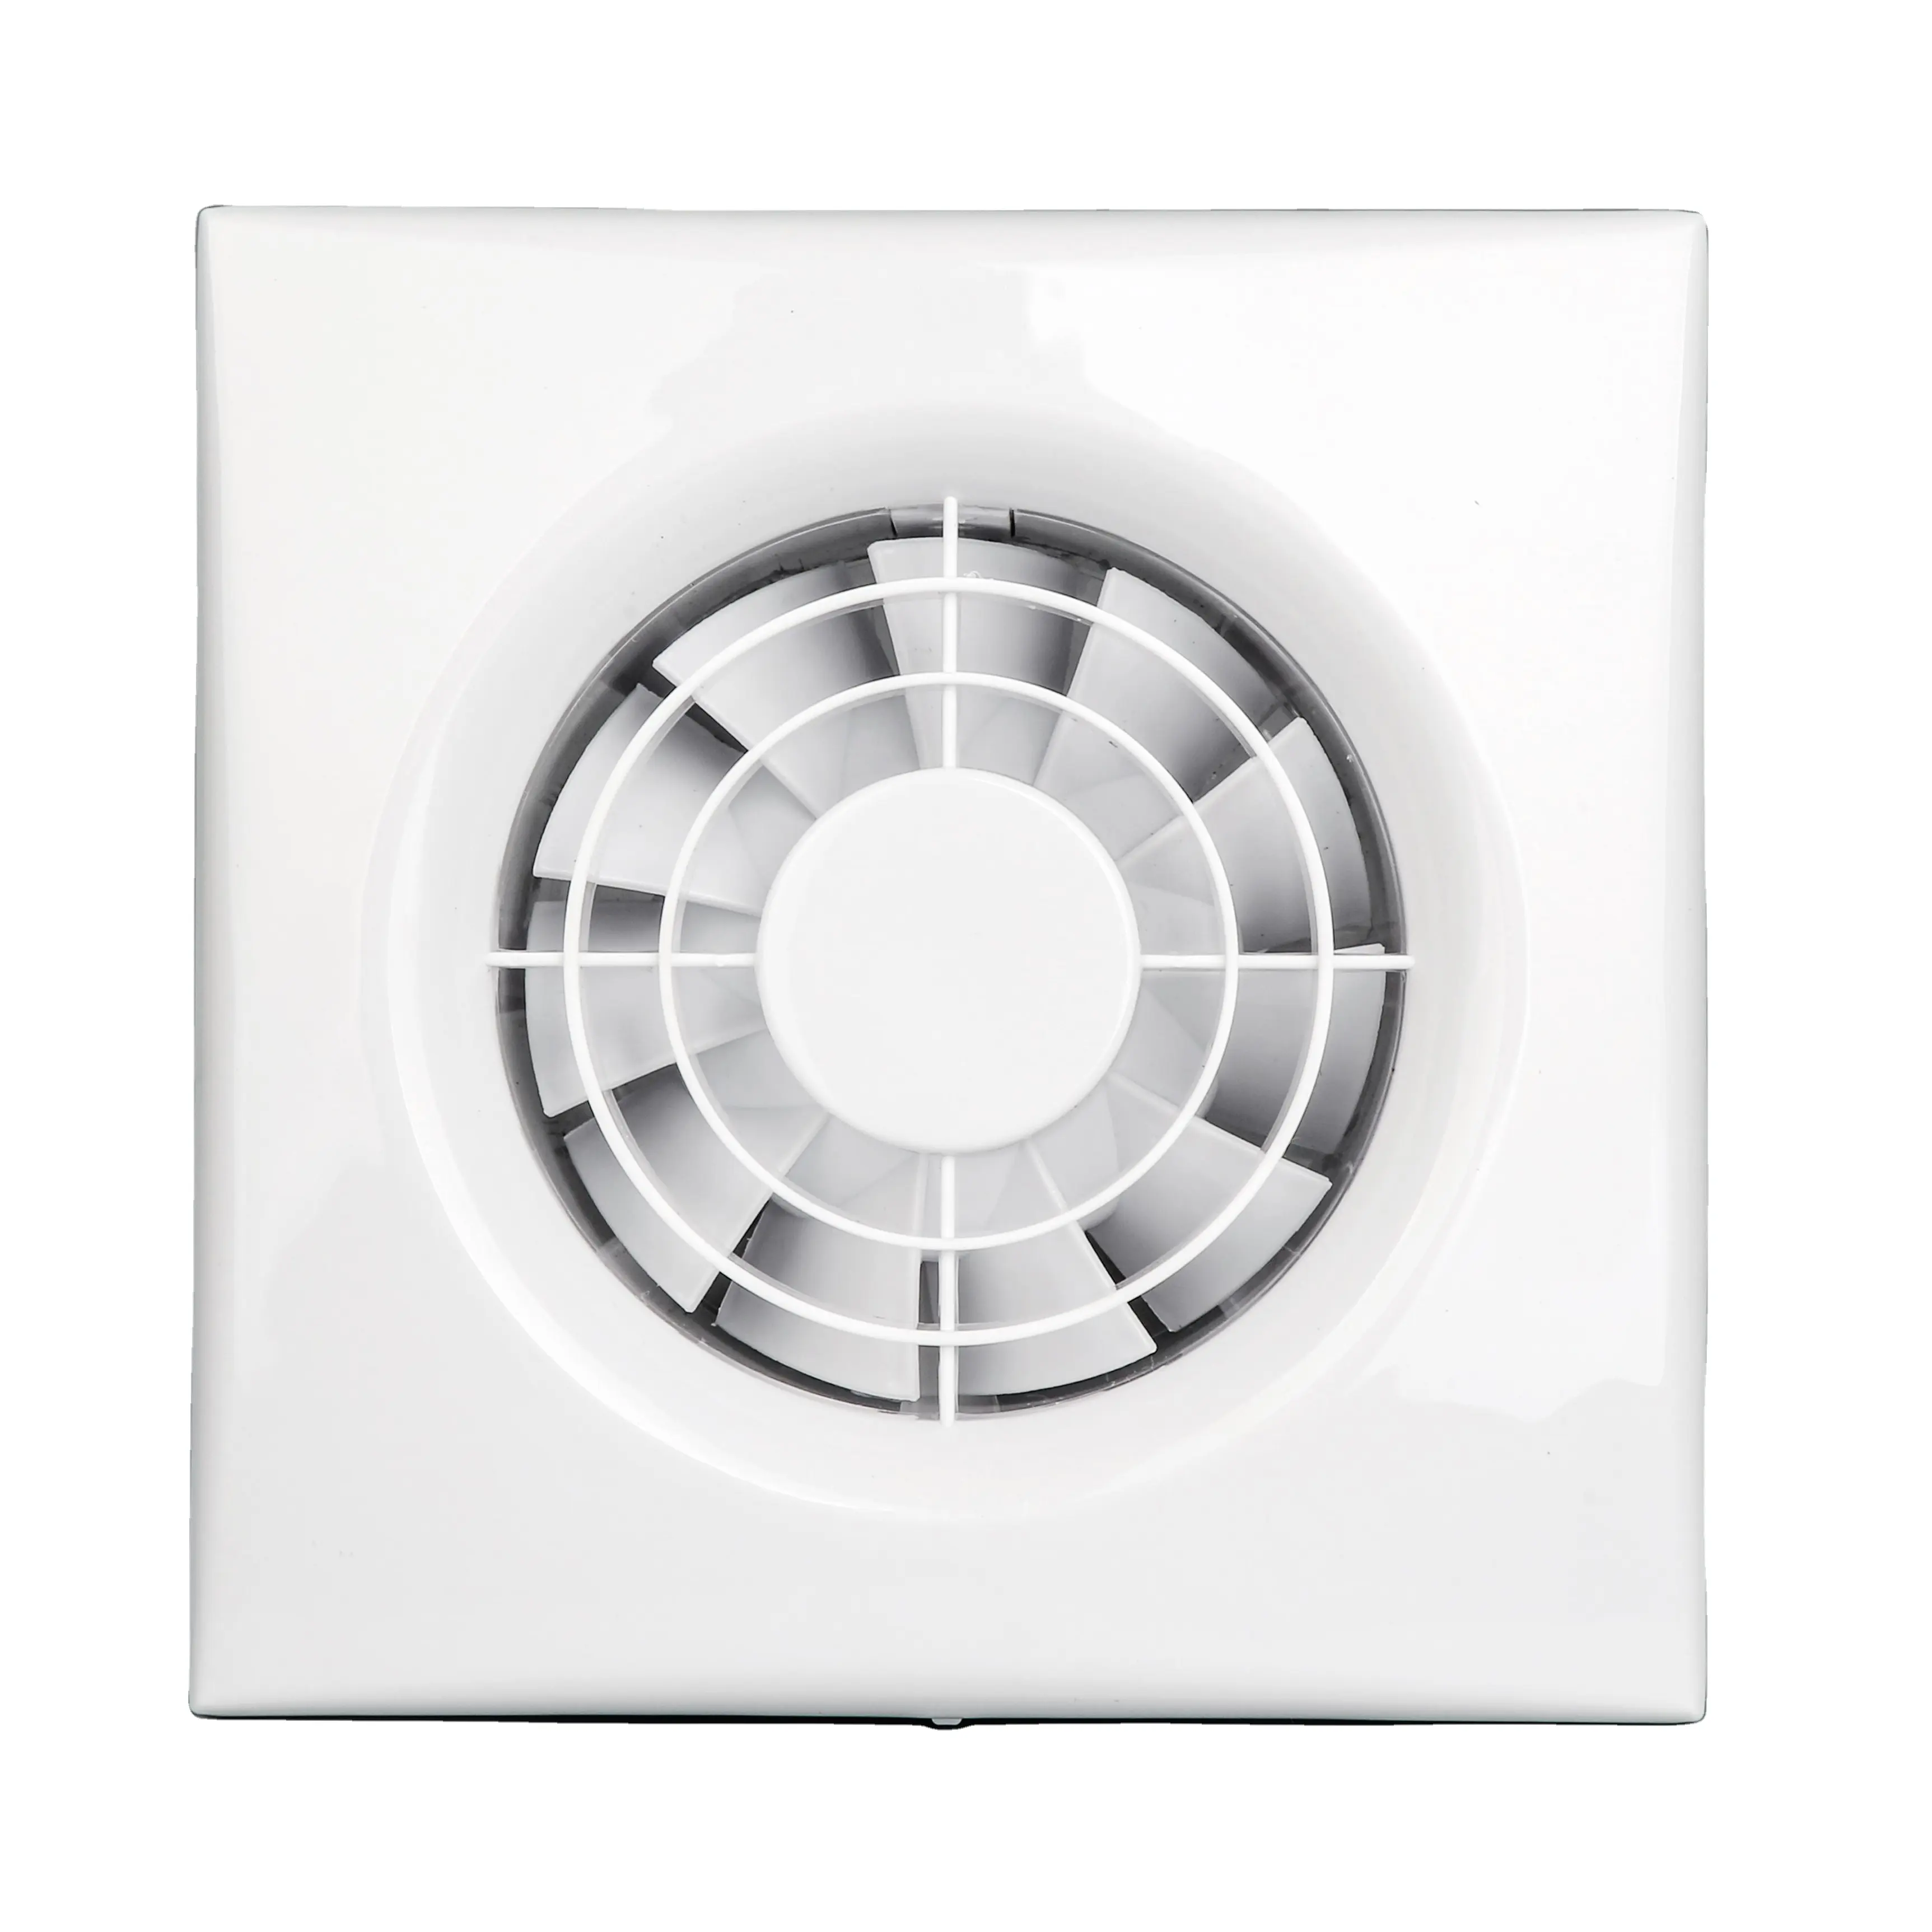 SAA poderoso tranquilo baño cocina Hogar personalizado marca de logotipo Extractor de ventilación del obturador ventilador de escape